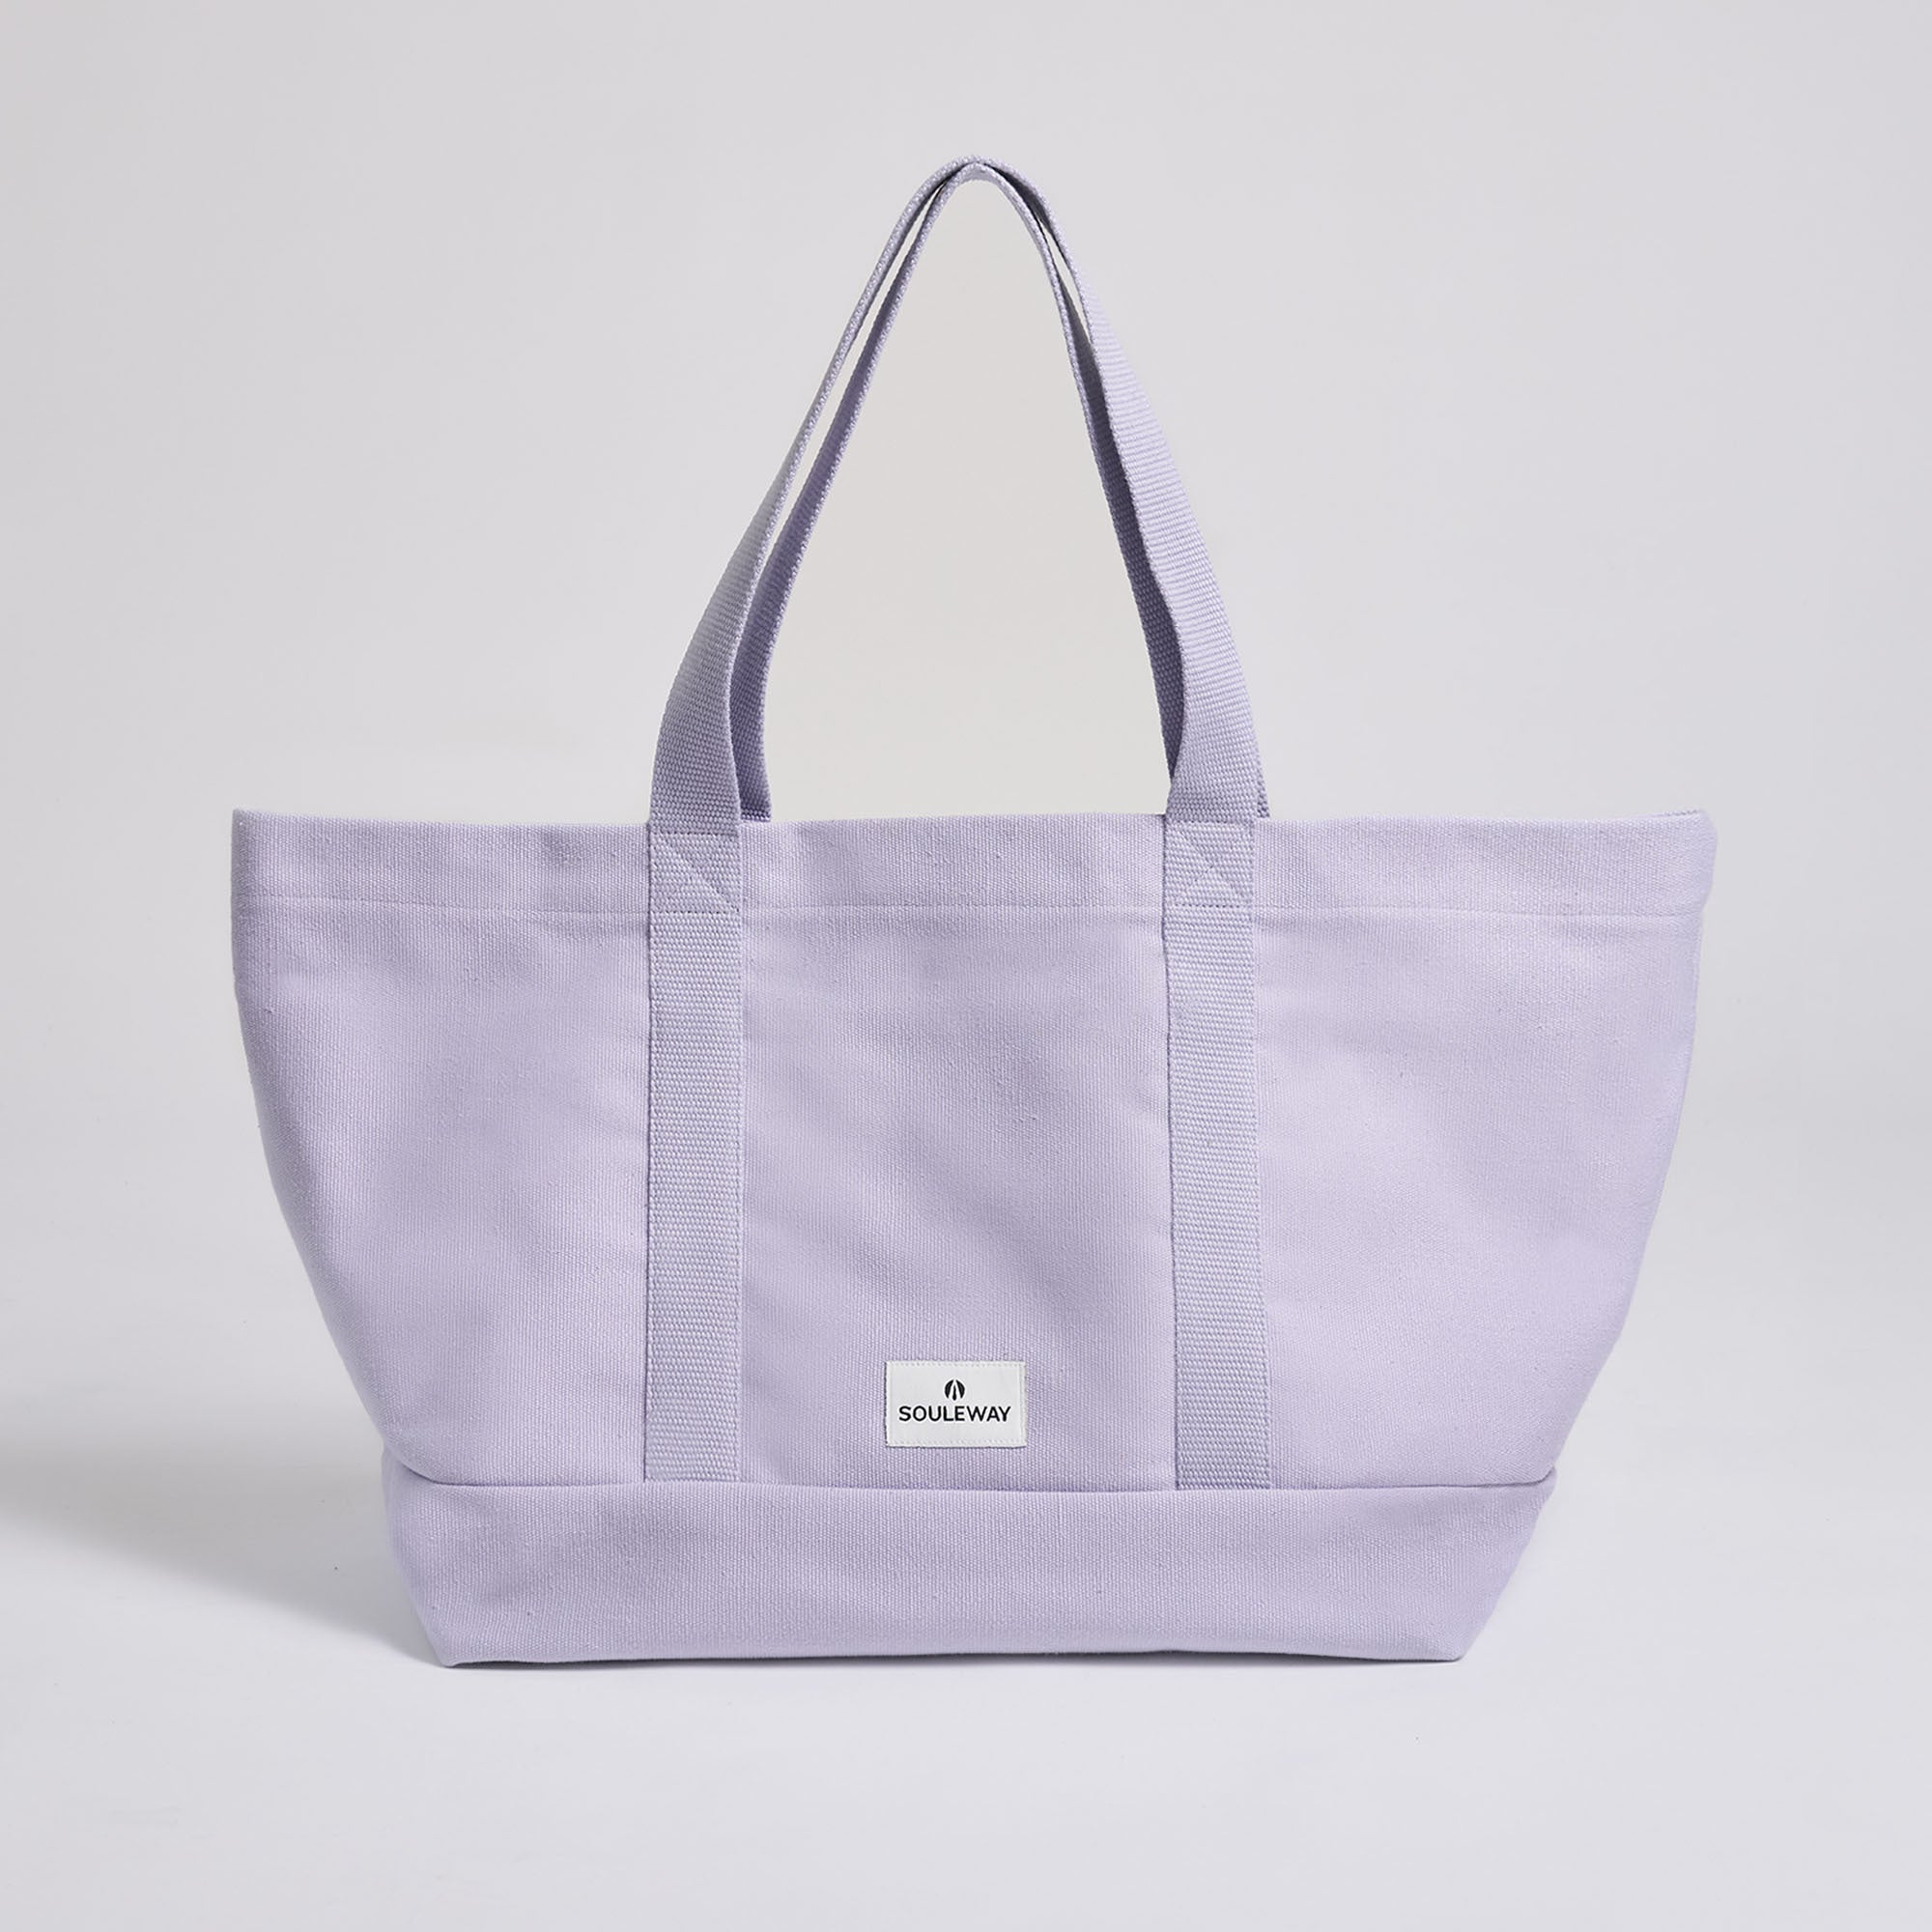 Soft Lavender--skip || Beach Bag - Strandtasche gross XXL - Shopper - Canvas